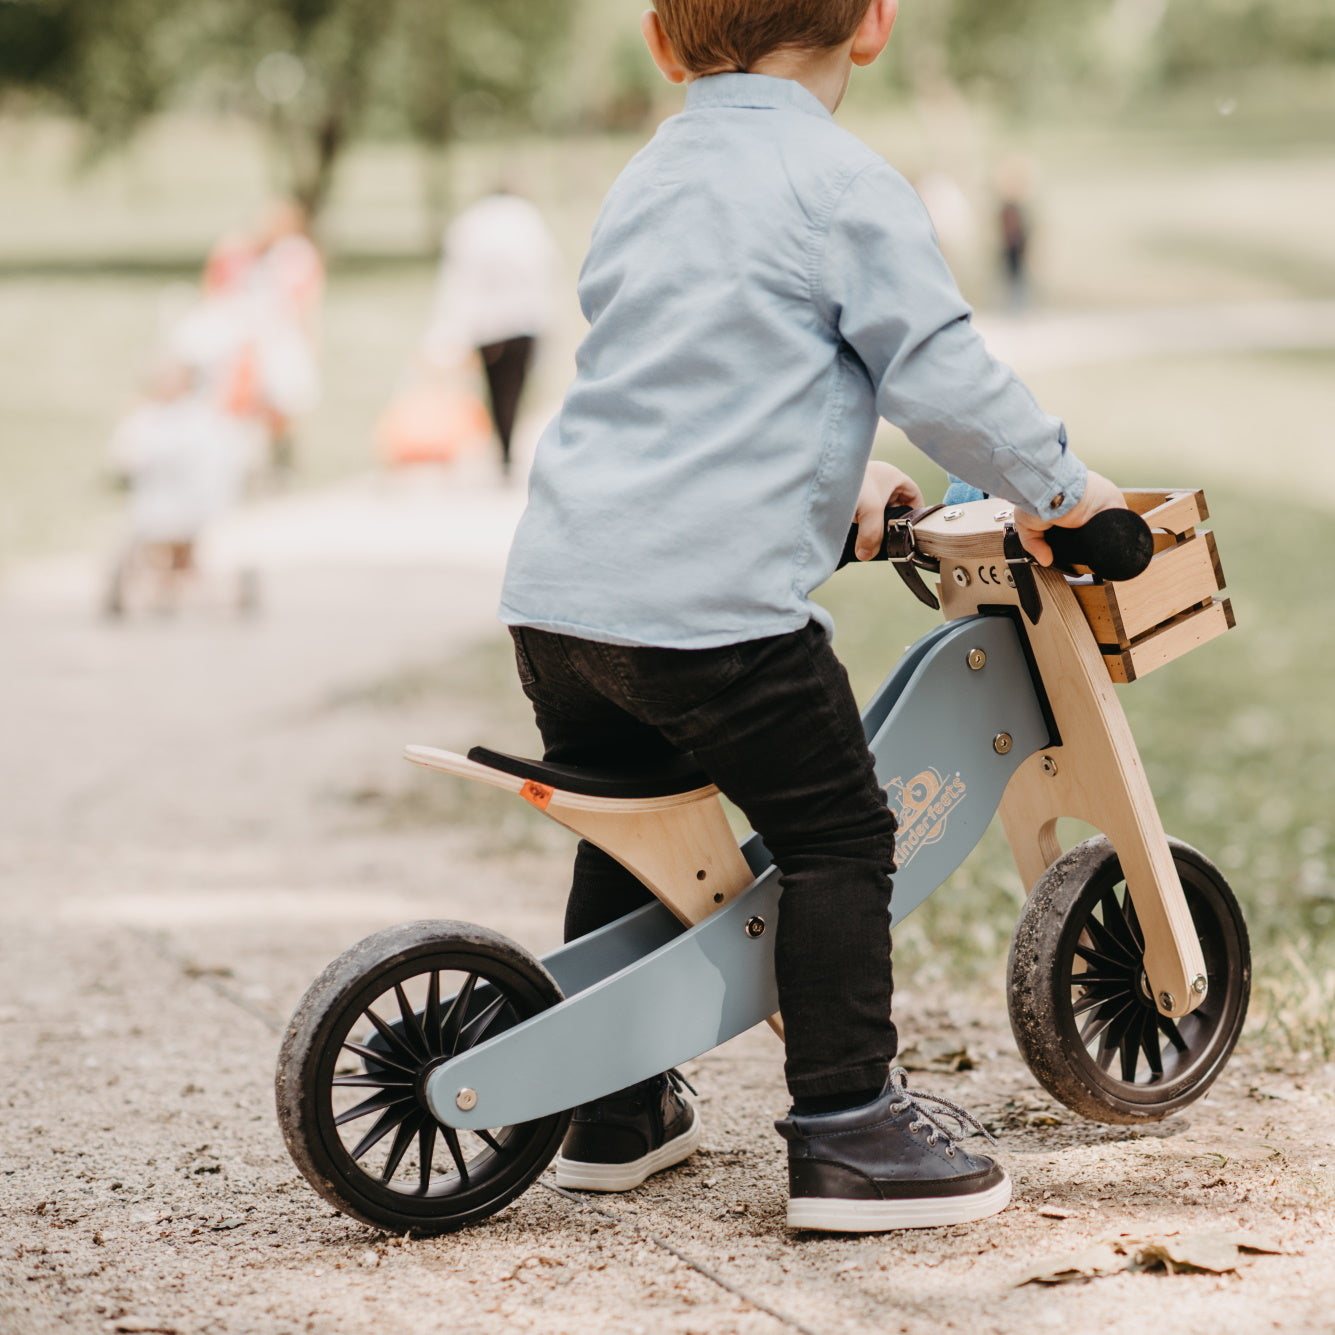 Kinderfeets | Tiny Tot Plus Trike/Balance Bike - Slate Blue - Belly Beyond 